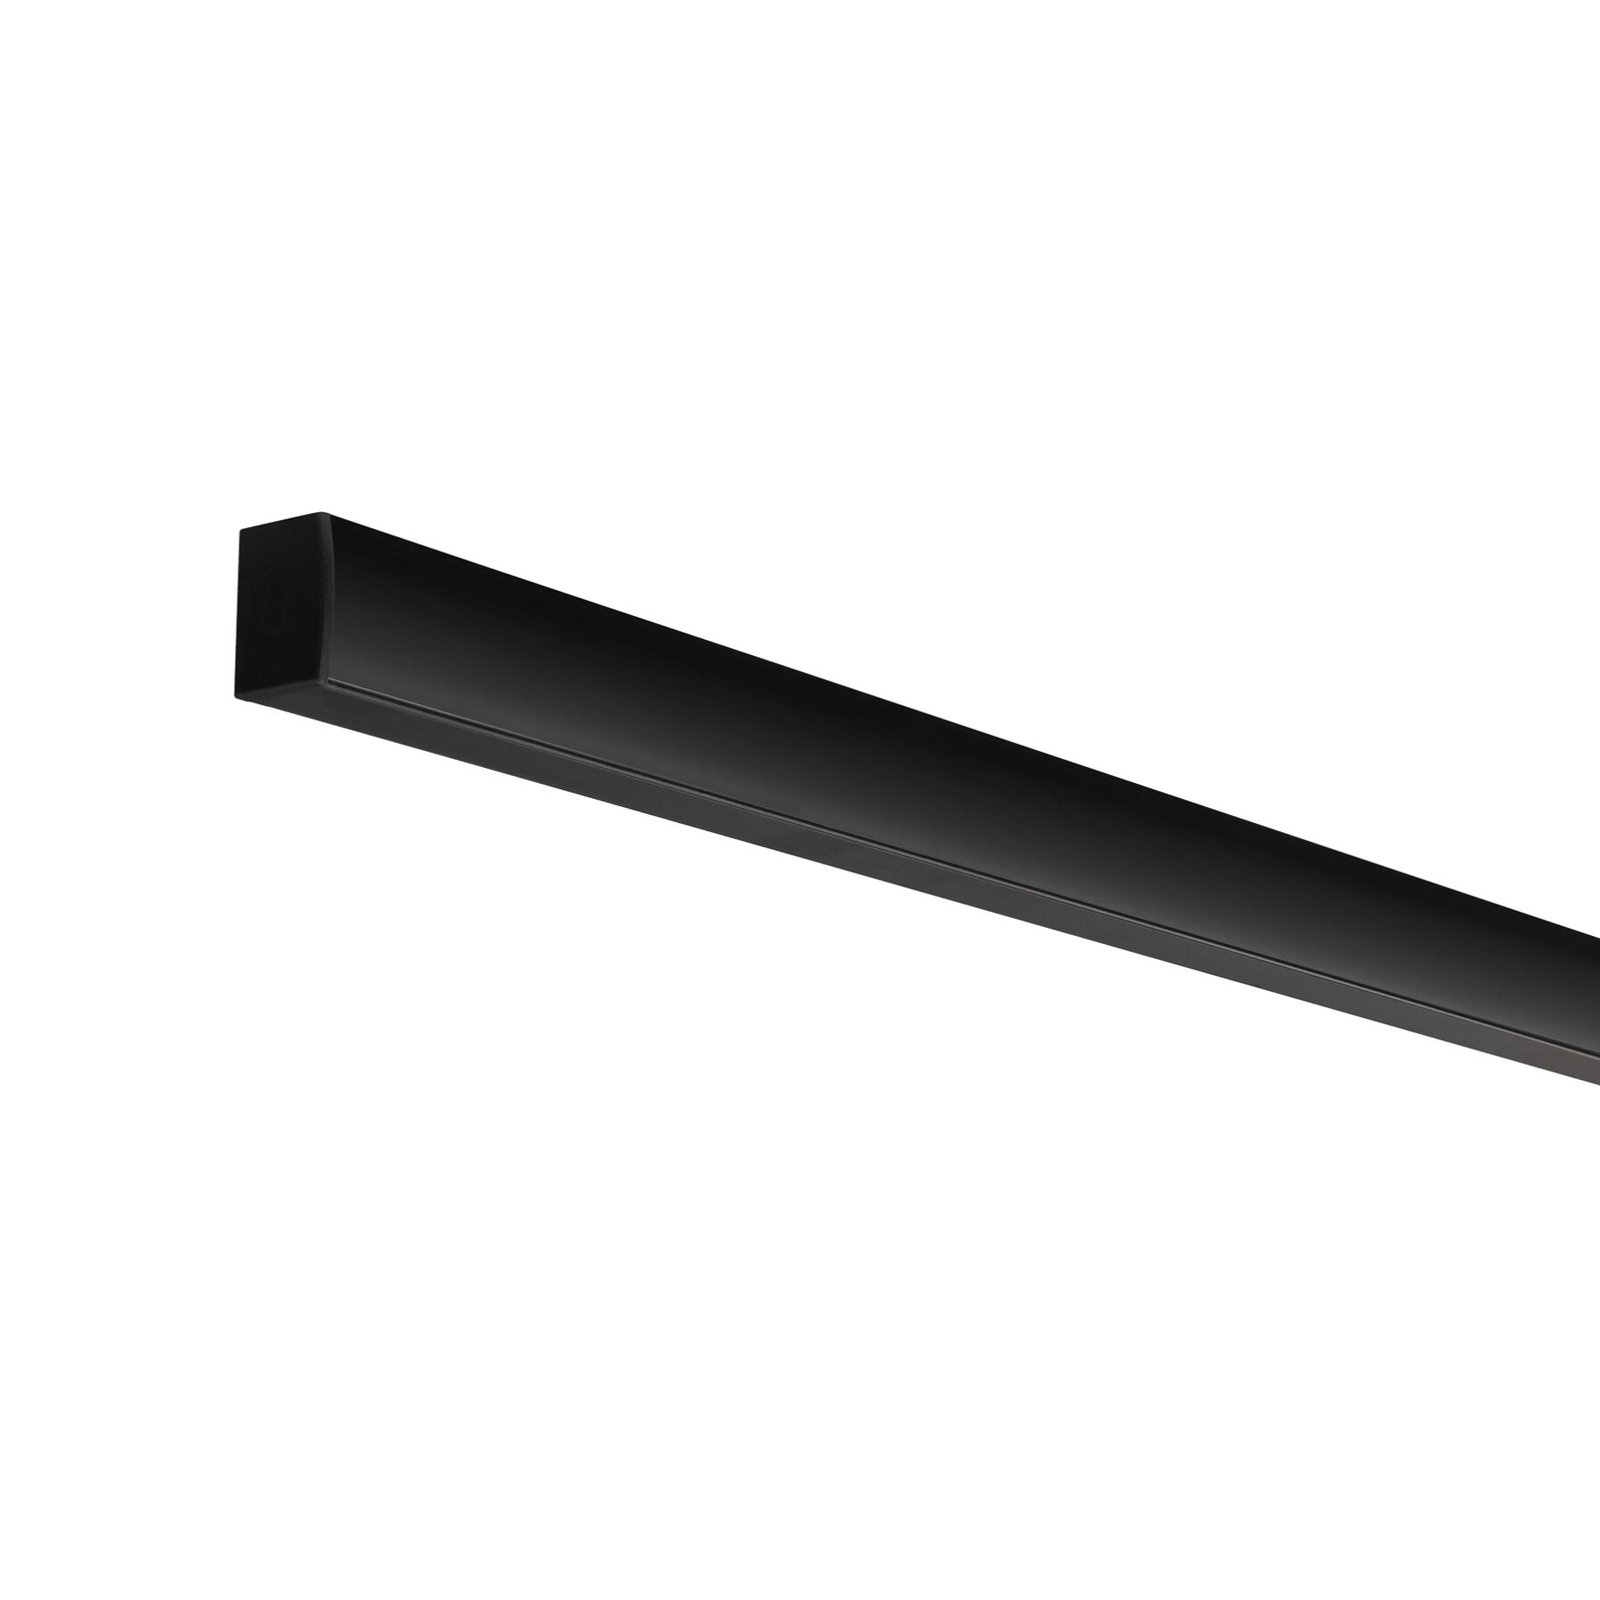 Paulmann Square profil svart diffusor svart 1 m